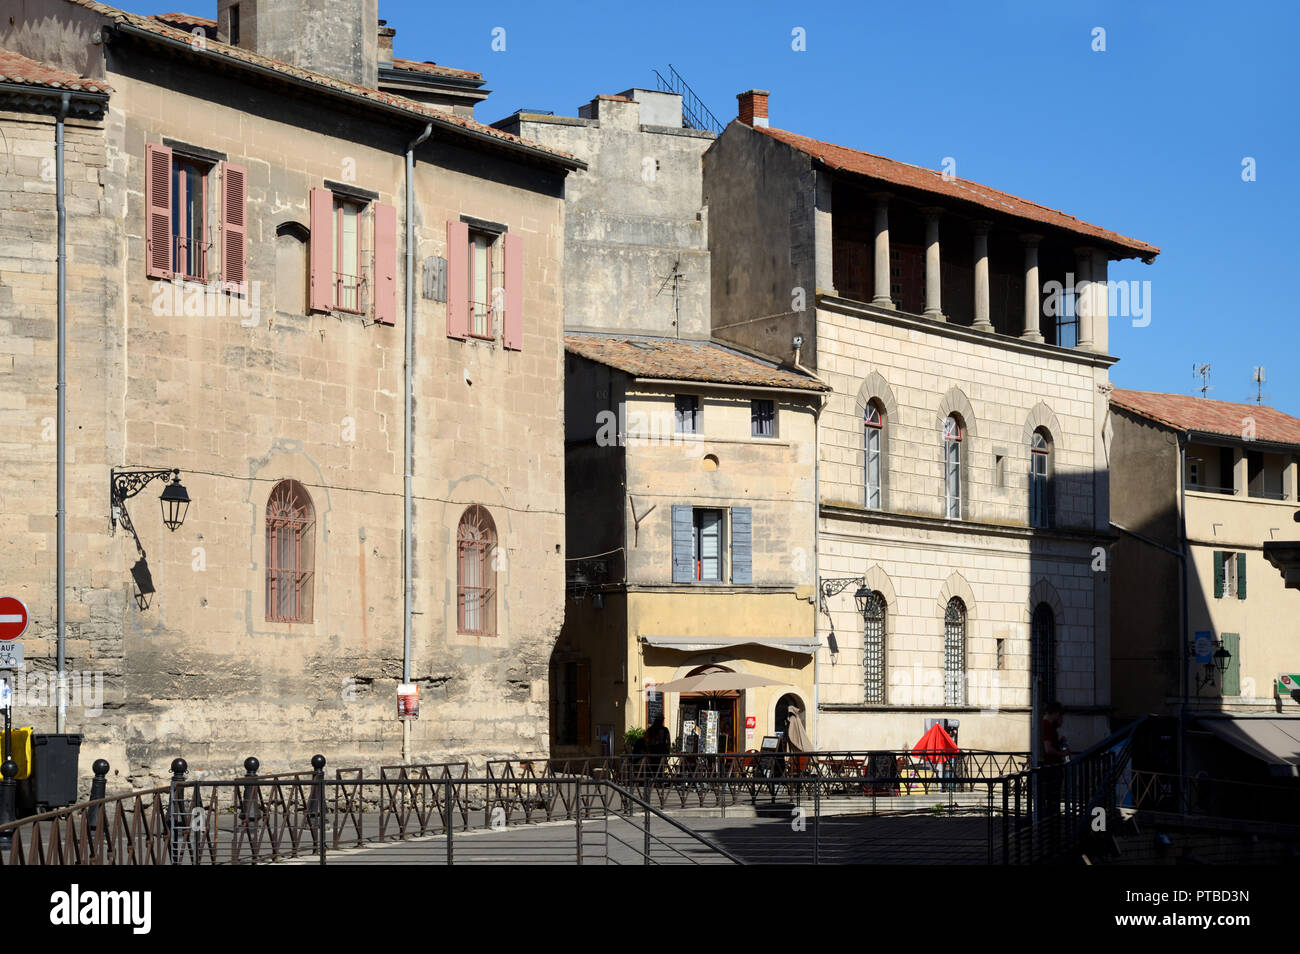 Los edificios históricos con vistas al anfiteatro romano en el casco antiguo de la ciudad o distrito histórico de Arles Provence Francia Foto de stock